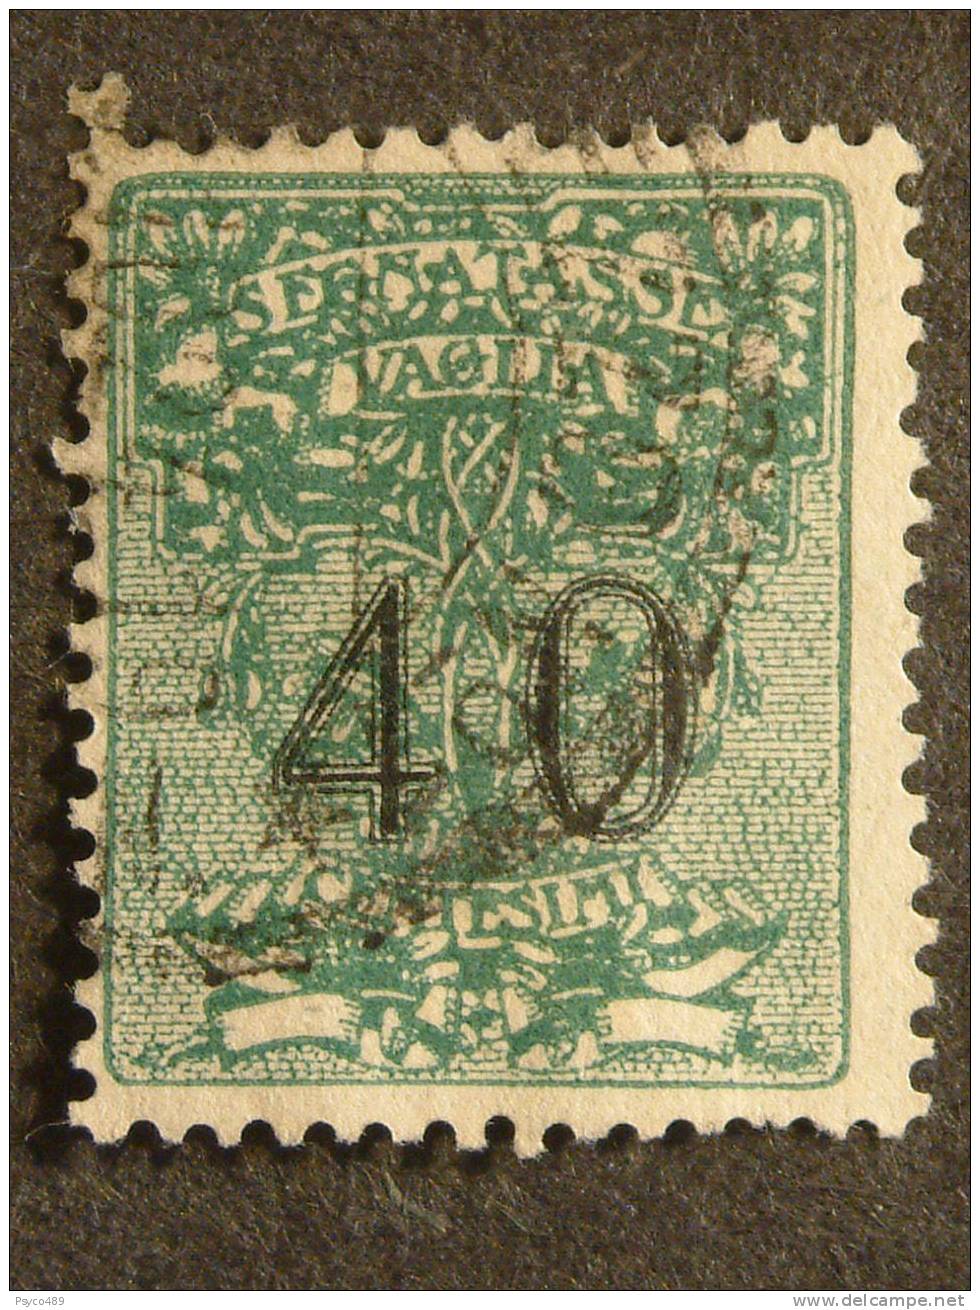 ITALIA Segatasse -1924- "Vaglia" C. 40 US° (descrizione) - Postage Due